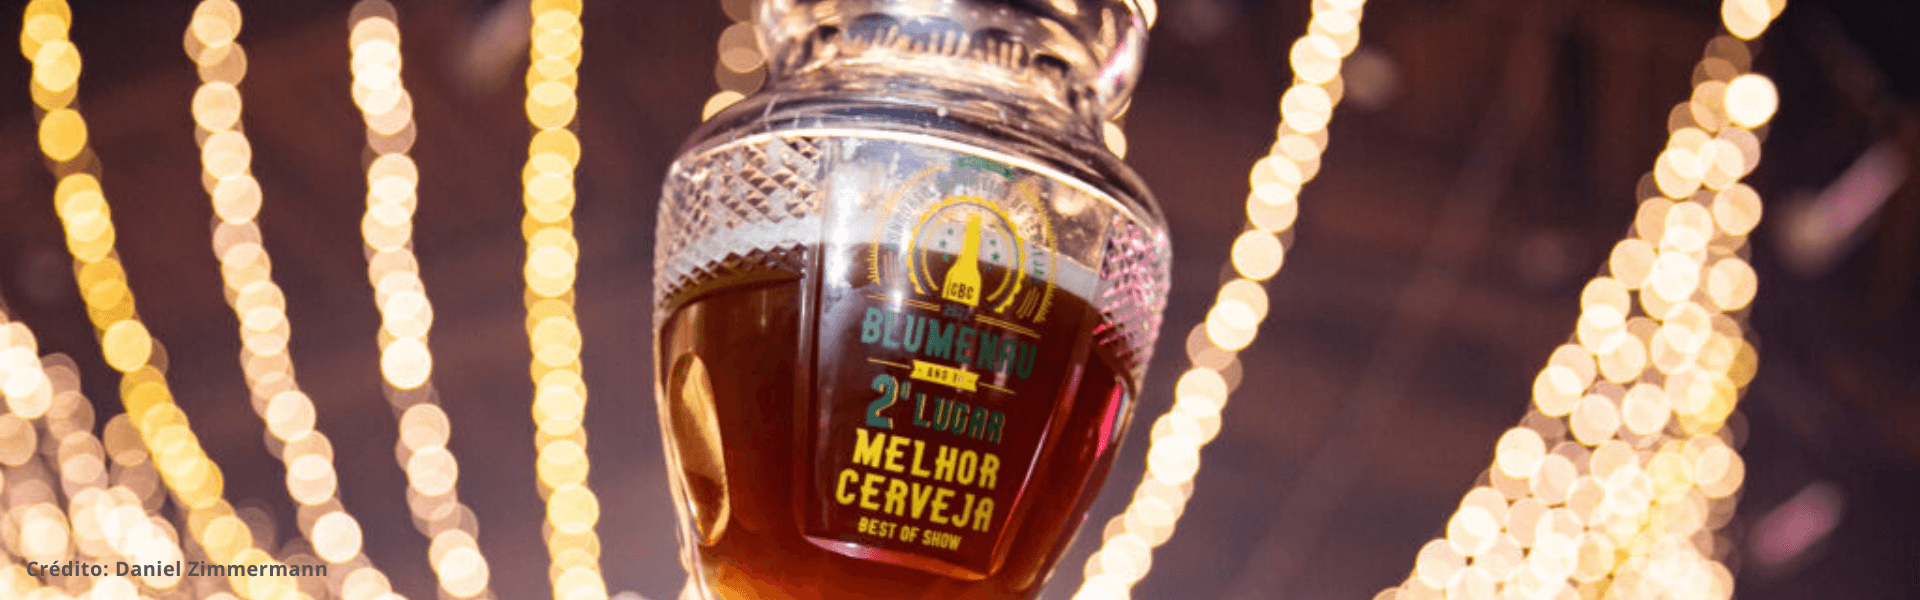 Inscrições para o 11º Concurso Brasileiro de Cervejas terminam em janeiro